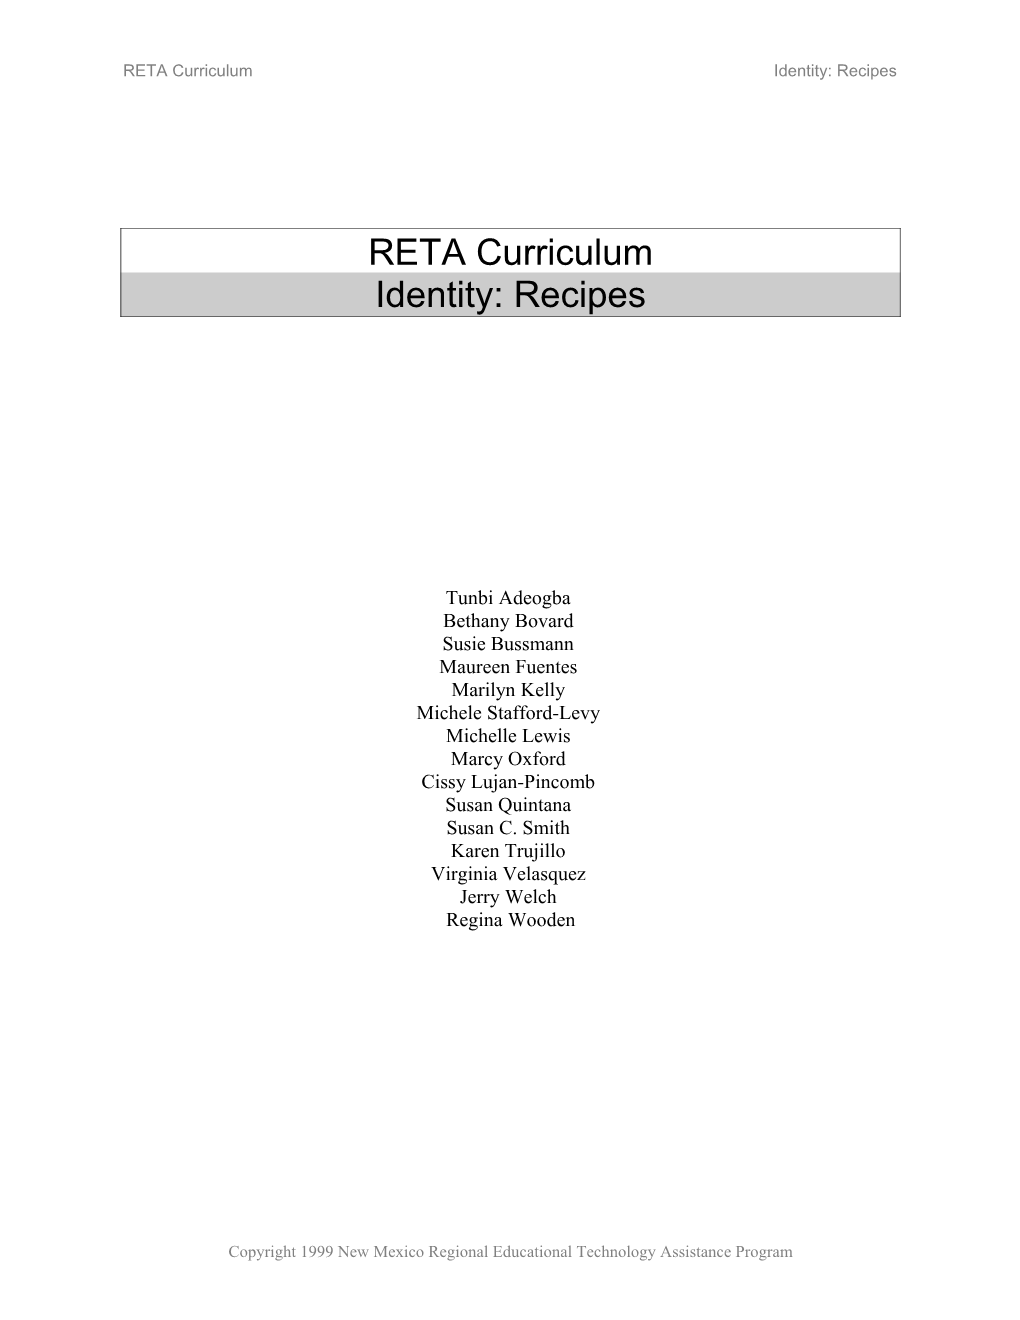 RETA Curriculum Identity: Recipes